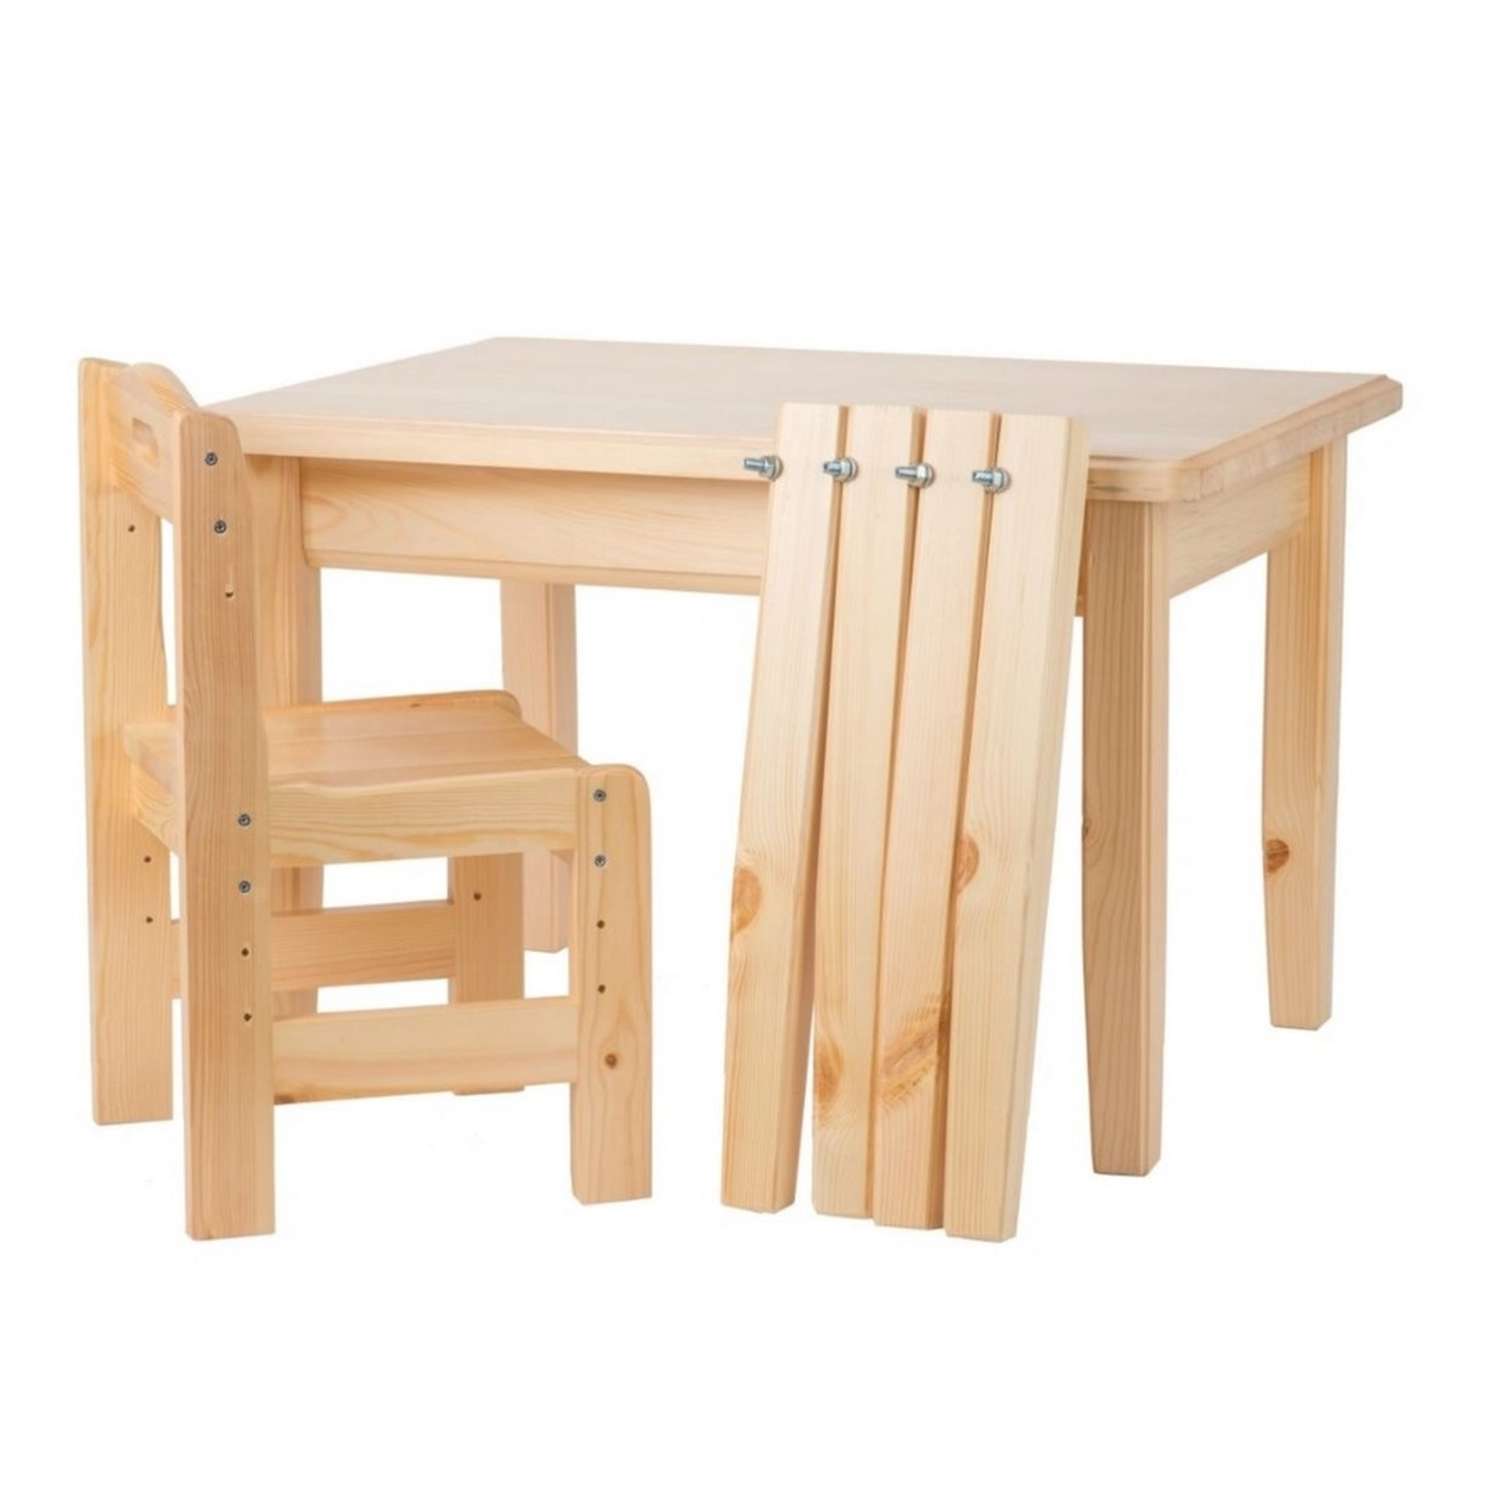 Набор мебели Мебель для дошколят стол со стульчиком регулируемый для детей от 4 до 8 лет - фото 1